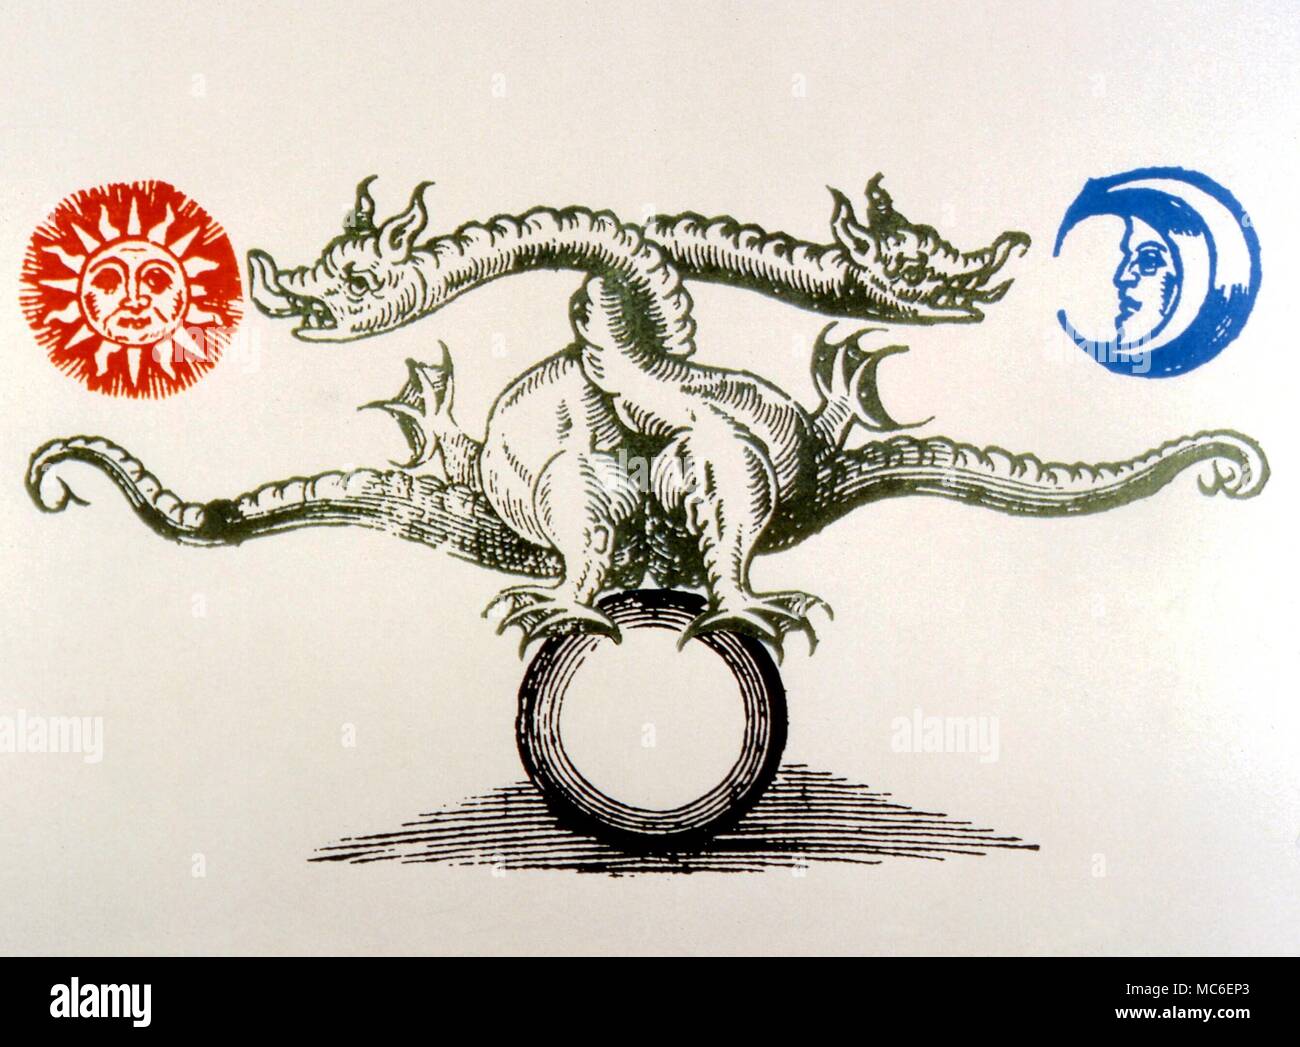 Immagine del double dragon tra il sole e la luna, in piedi sulla terra, dopo Norton. Questo dragone è legato con nodi lunari Foto Stock